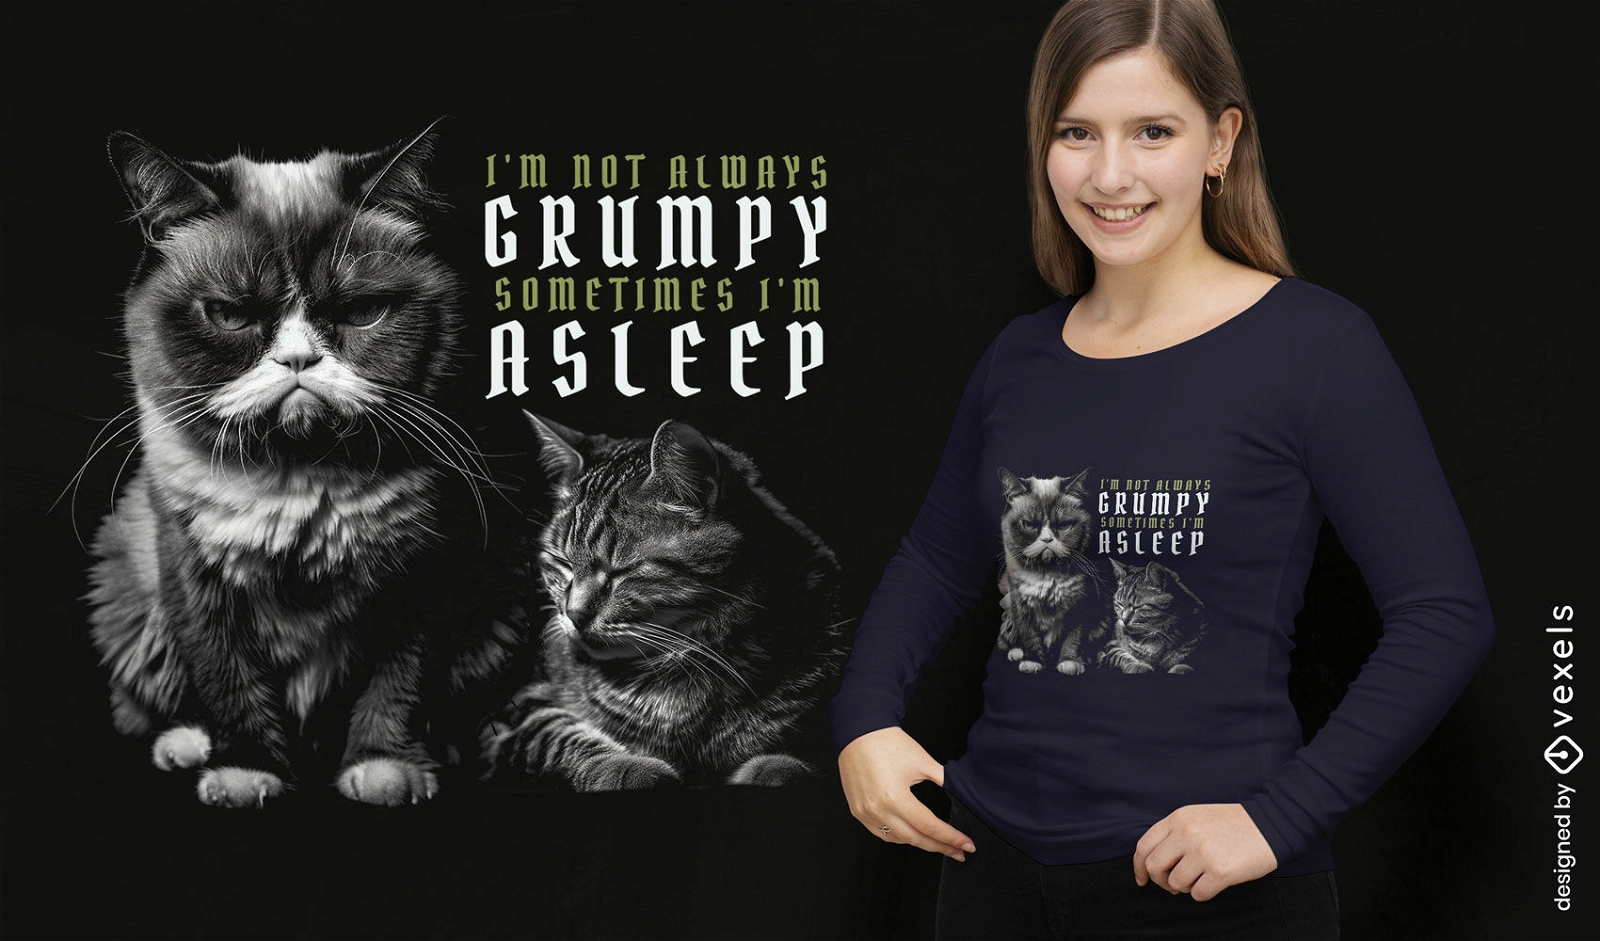 Dise?o de camiseta con cita de gato gru??n y dormido.